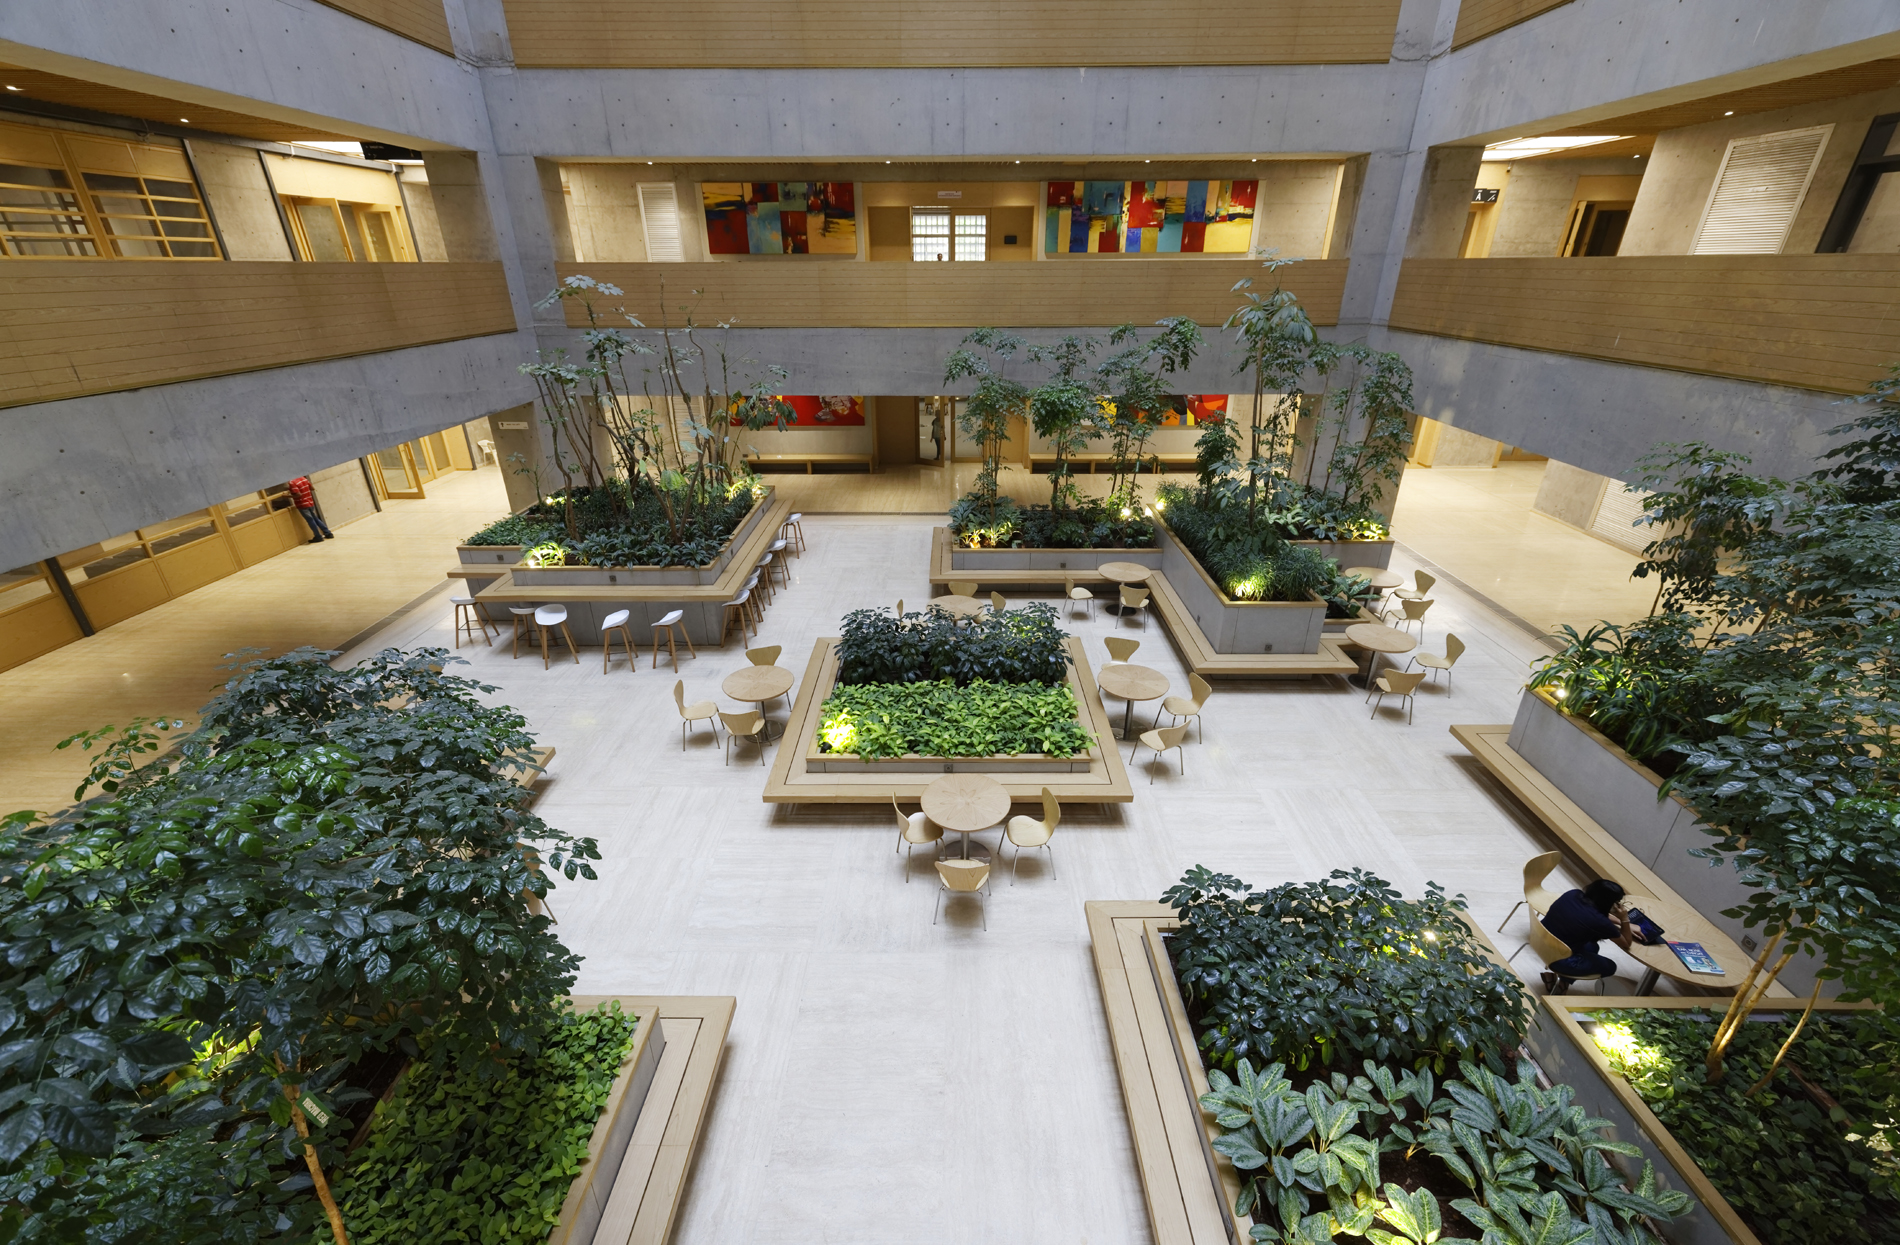 D Y Patil Centre of Excellence_Entrance Lobby Atrium_2